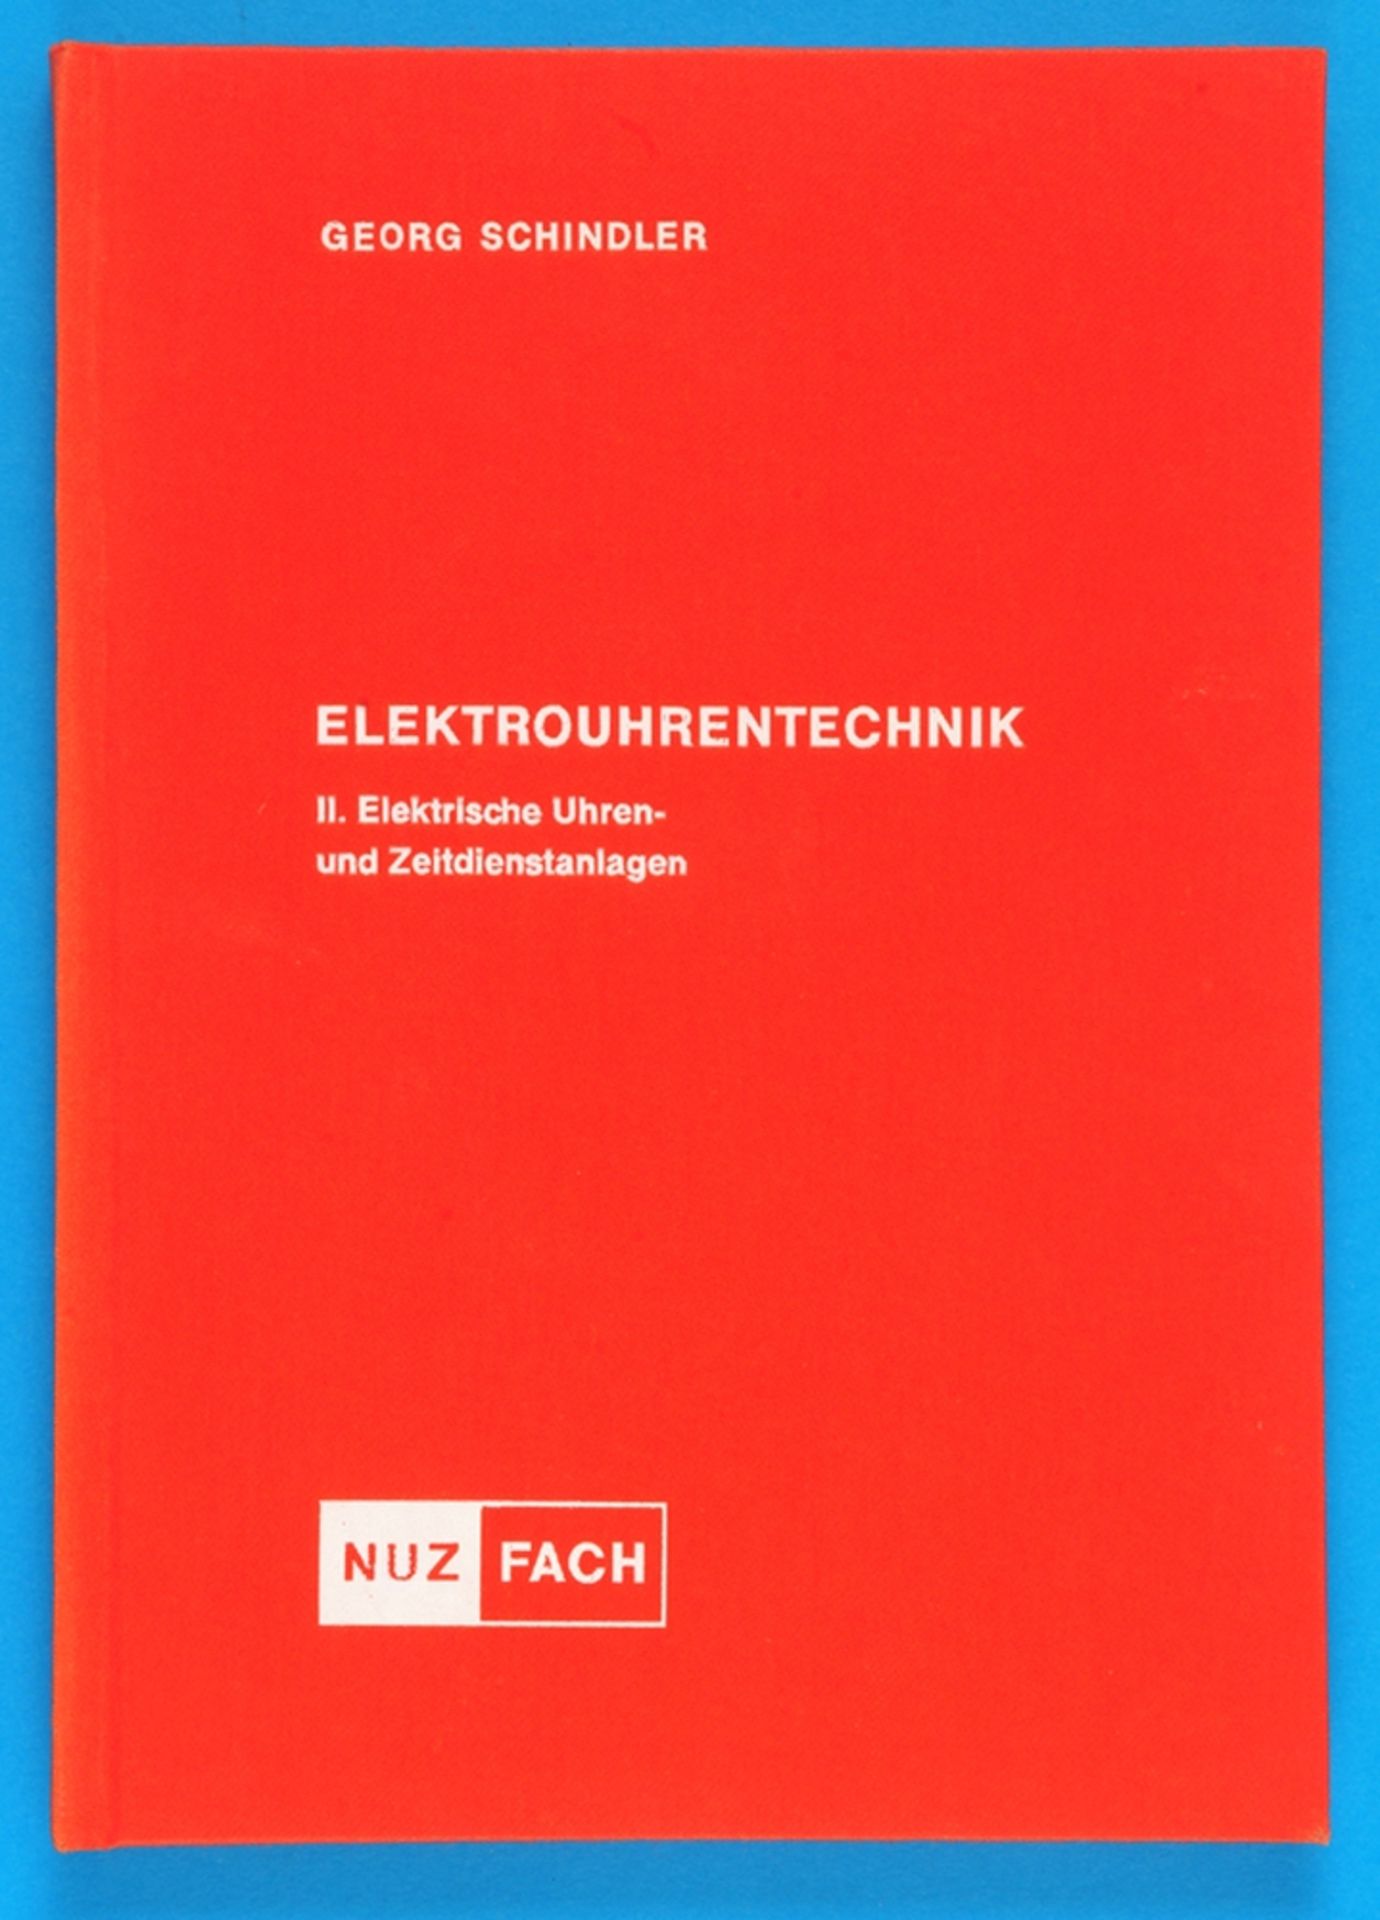 Georg Schindler, Elektrouhrentechnik, II. Elektrische Uhren- und Zeitdienstanlagen, mit einem Anhang